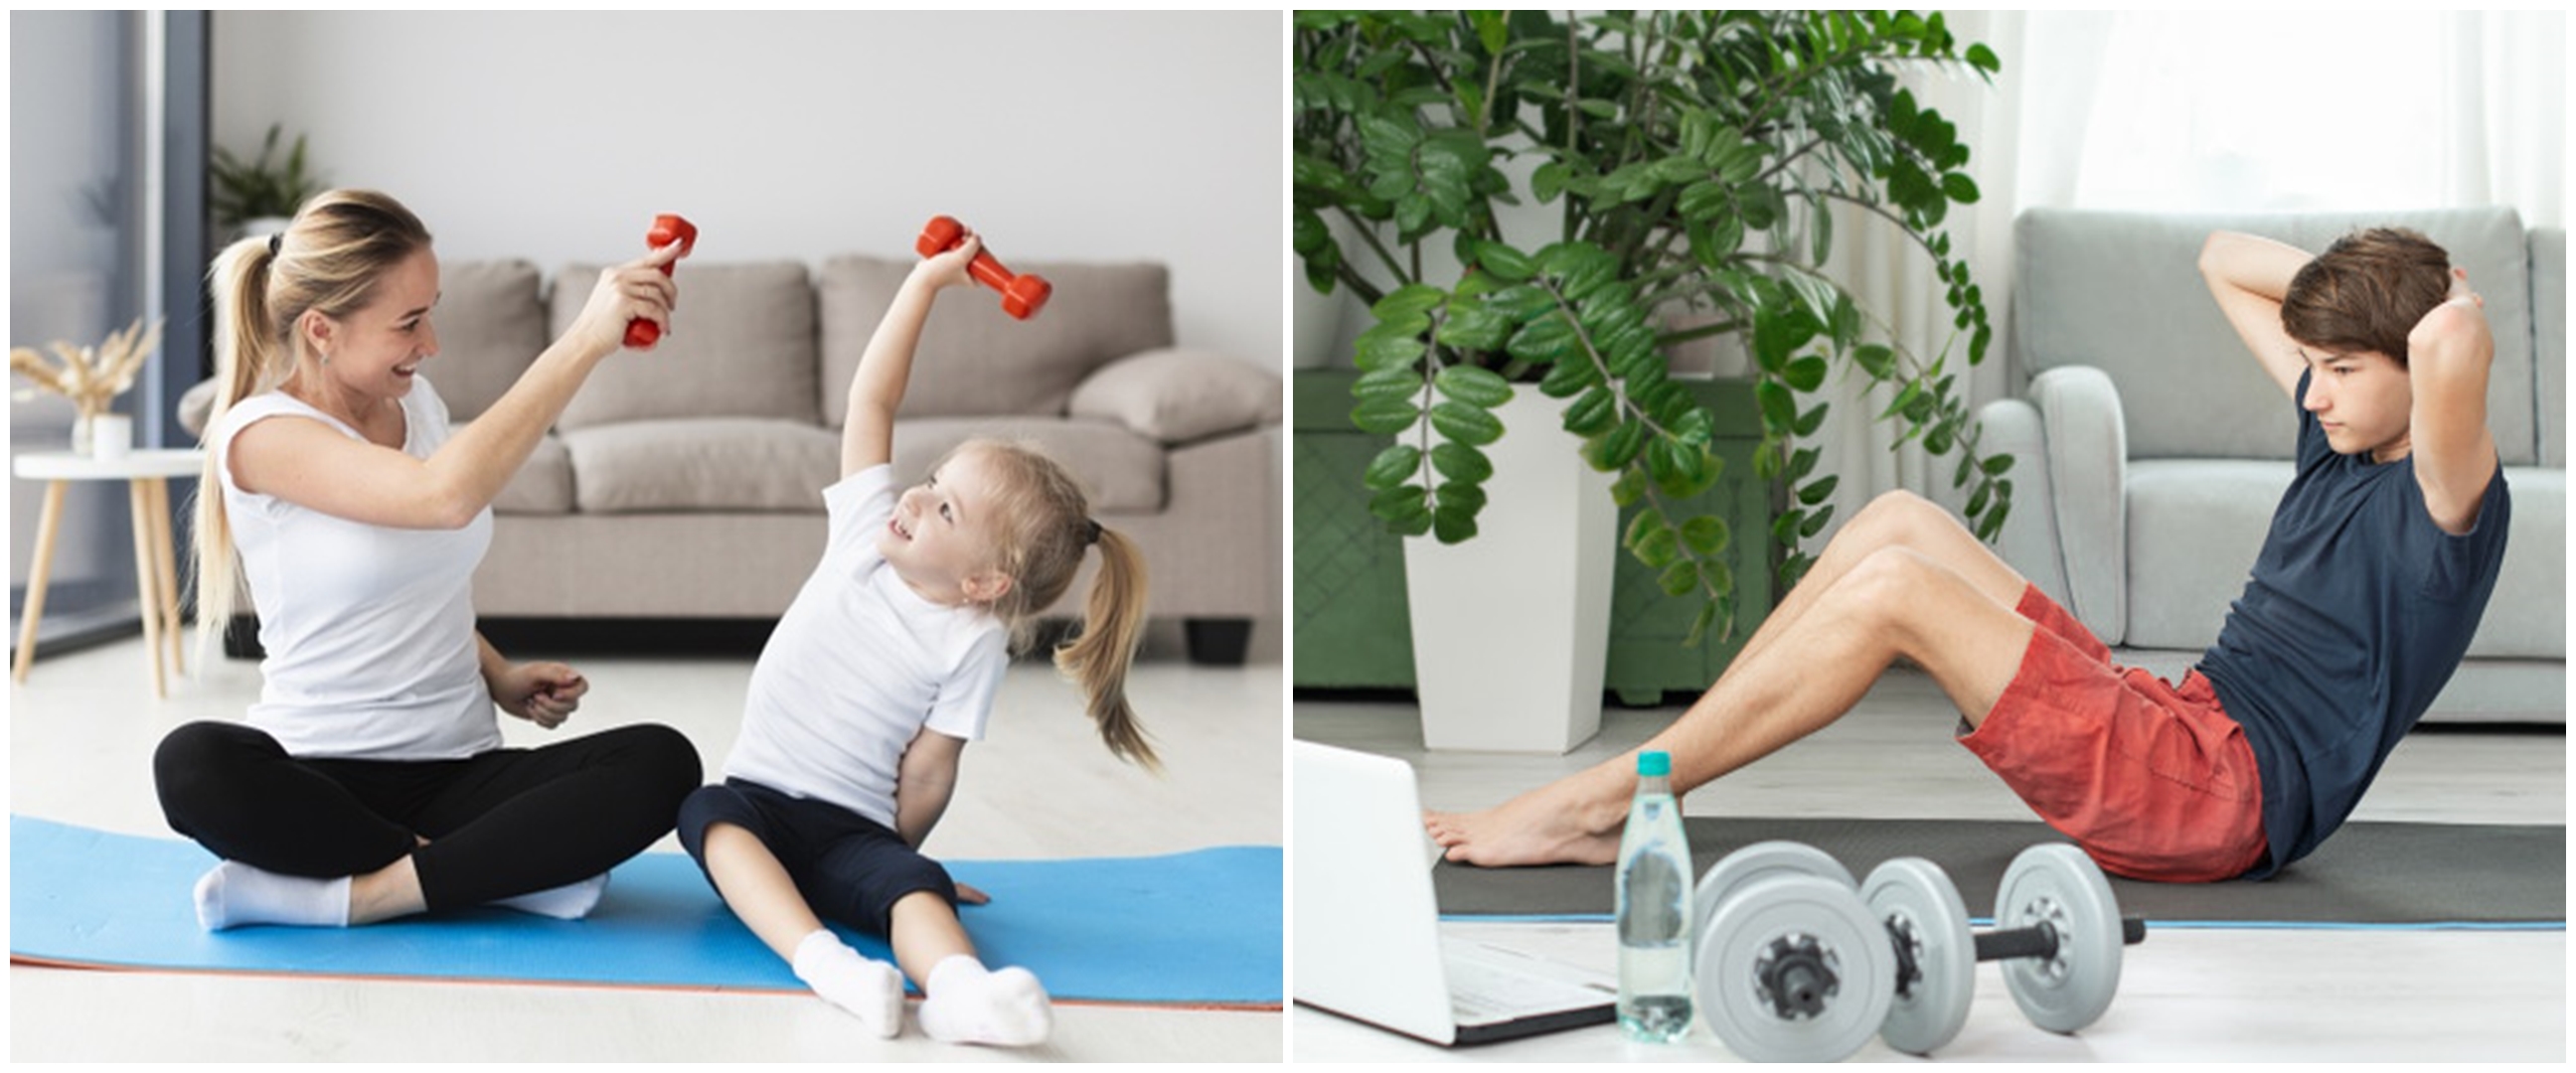 11 Manfaat push up dan sit up untuk kesehatan selama di rumah